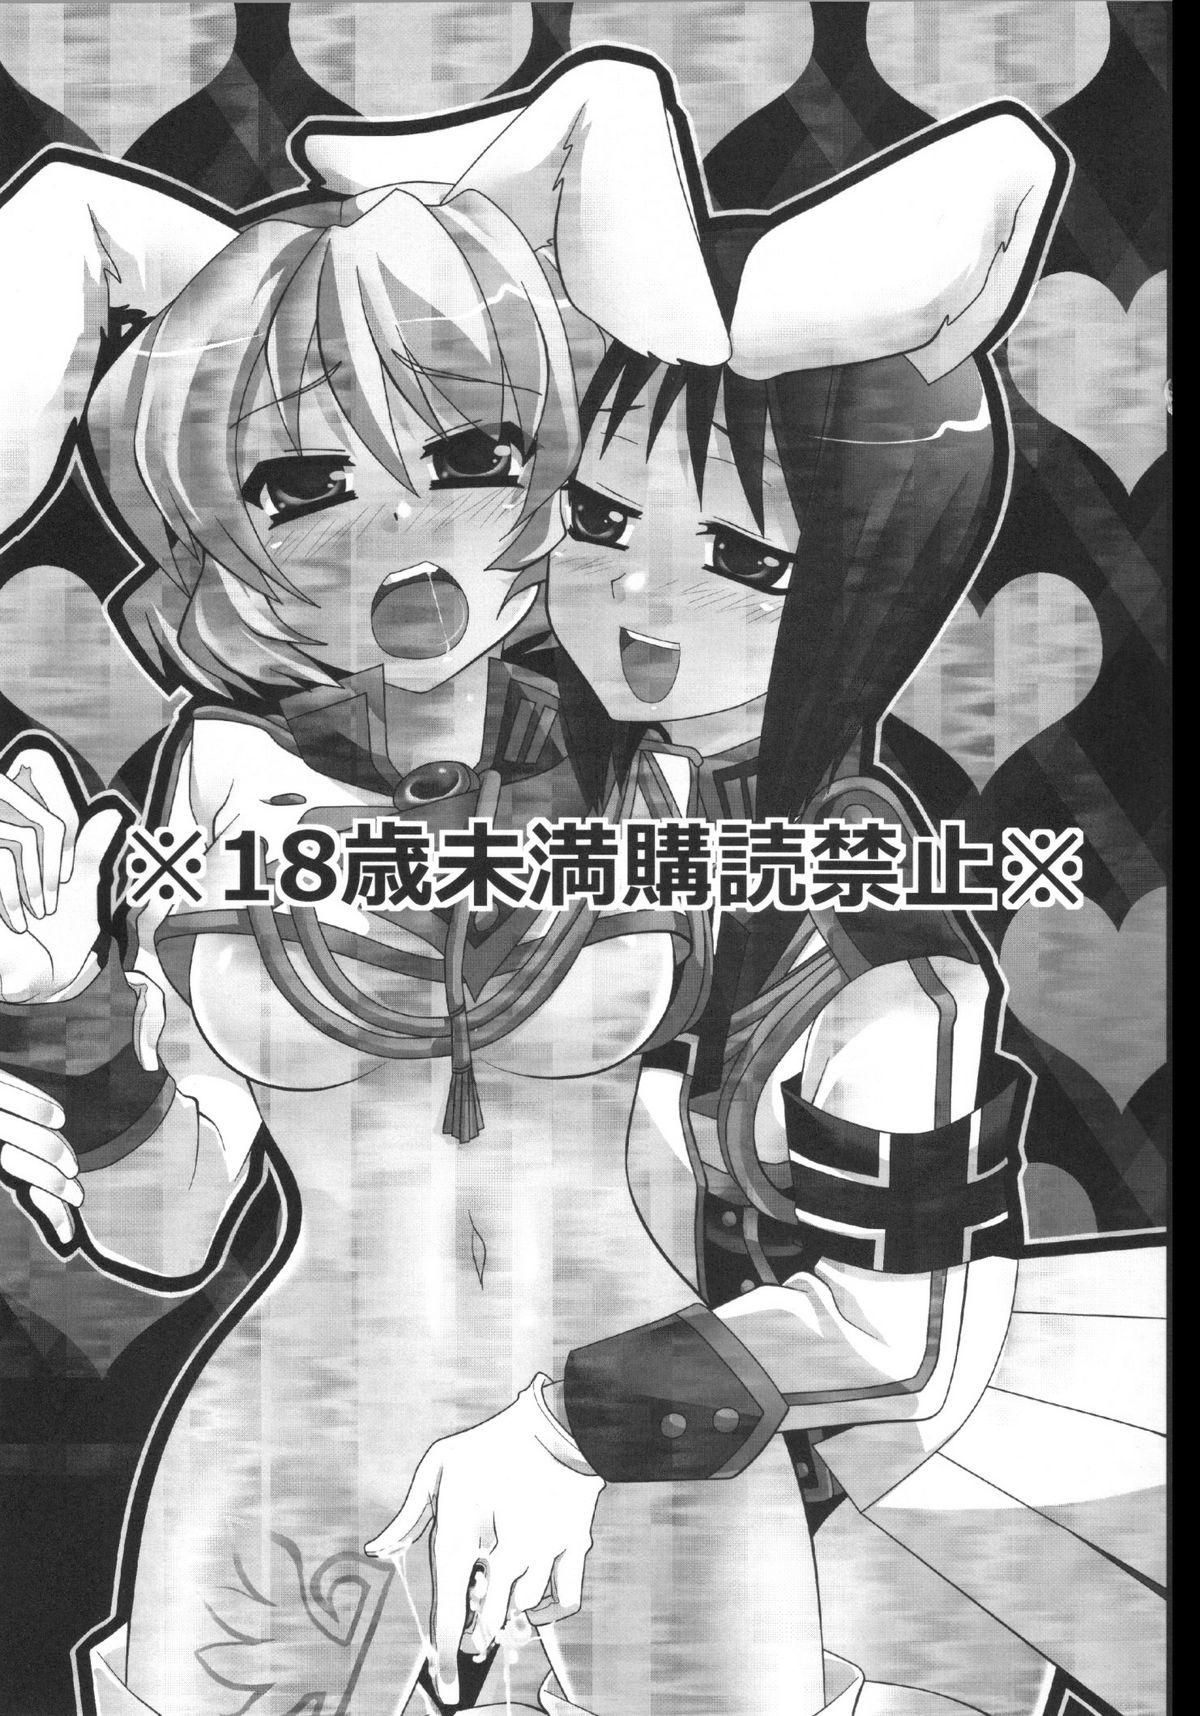 White Chick RabiRabi - Umineko no naku koro ni Fake Tits - Page 2